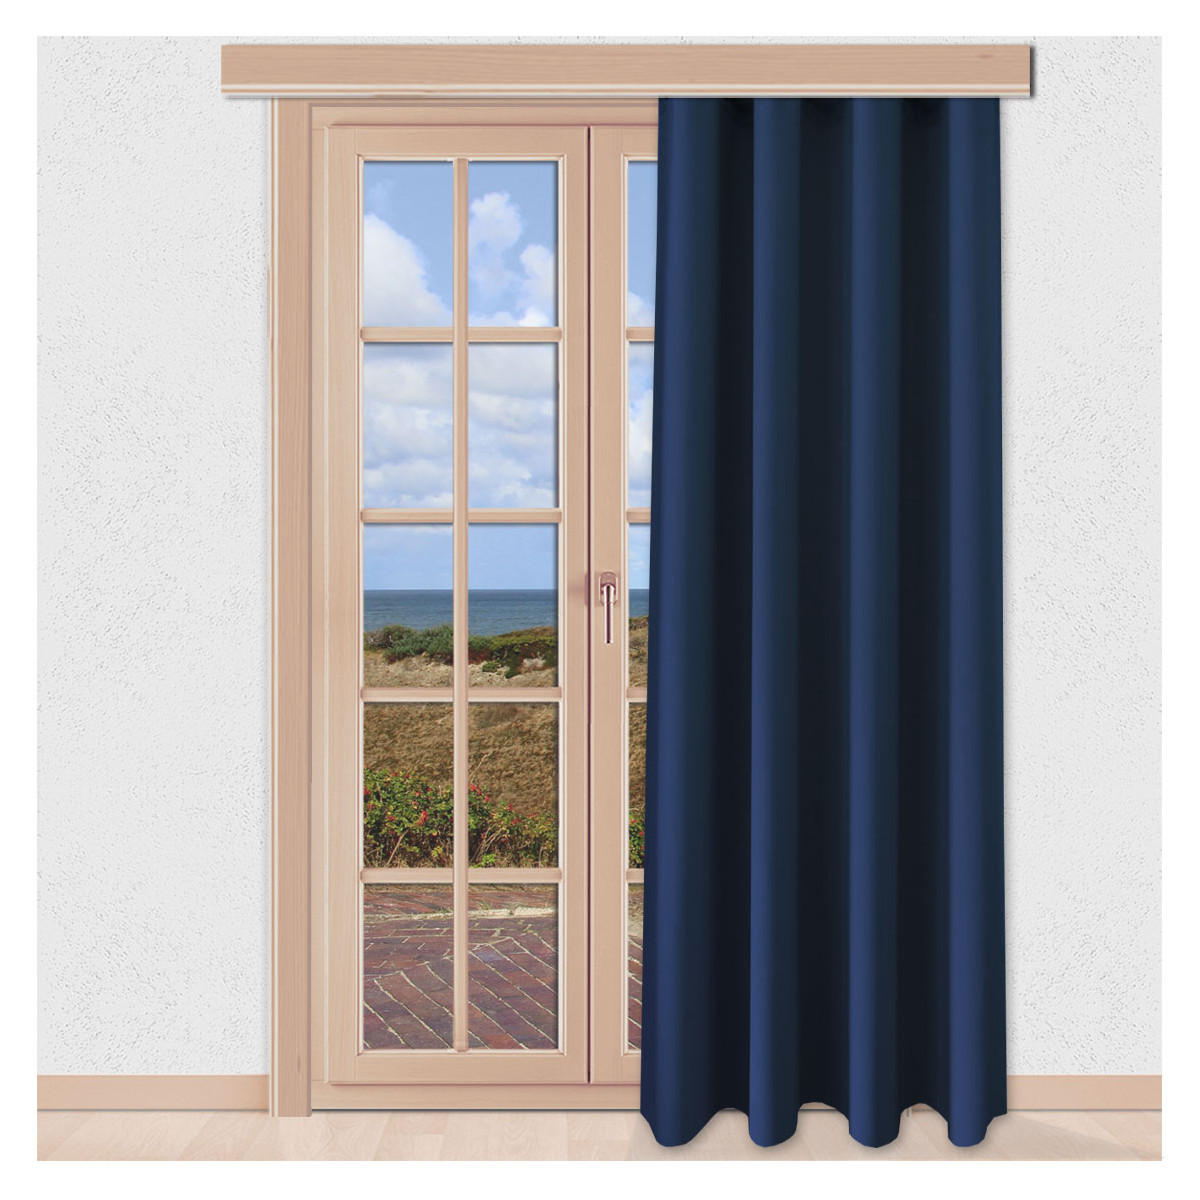 Verdunklungs-Vorhang Mattis Blau mit Reihband Sunout Fertiggardine an einem bodentiefen Fenster